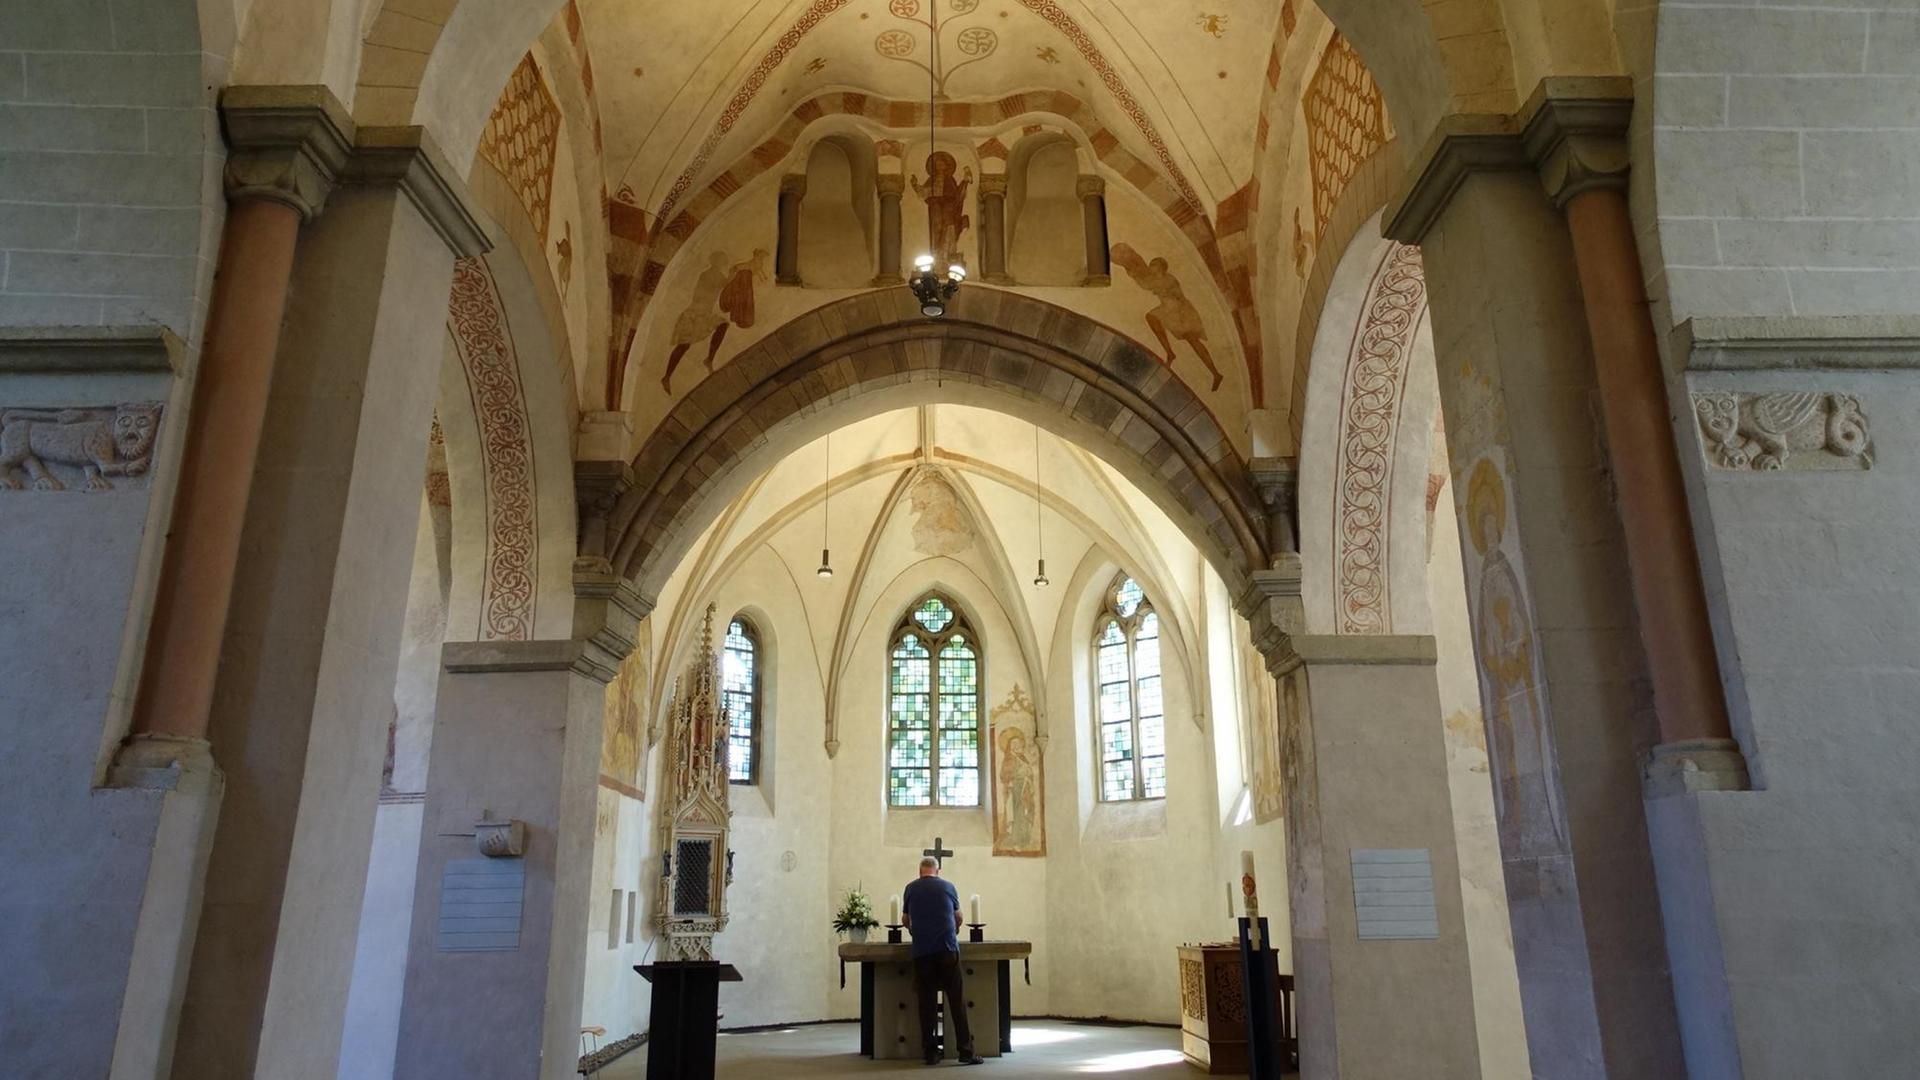 Der Innenraum der Stiepeler Dorfkirche, Blick zum Altar, vor dem ein Mann in dunkler Kleidung steht, mit dem Rücken zum Betrachter. An den sonst schlichten Stein-Wänden erkennt man restaurierte mittelalterliche Malereien in rostroter Farbe.